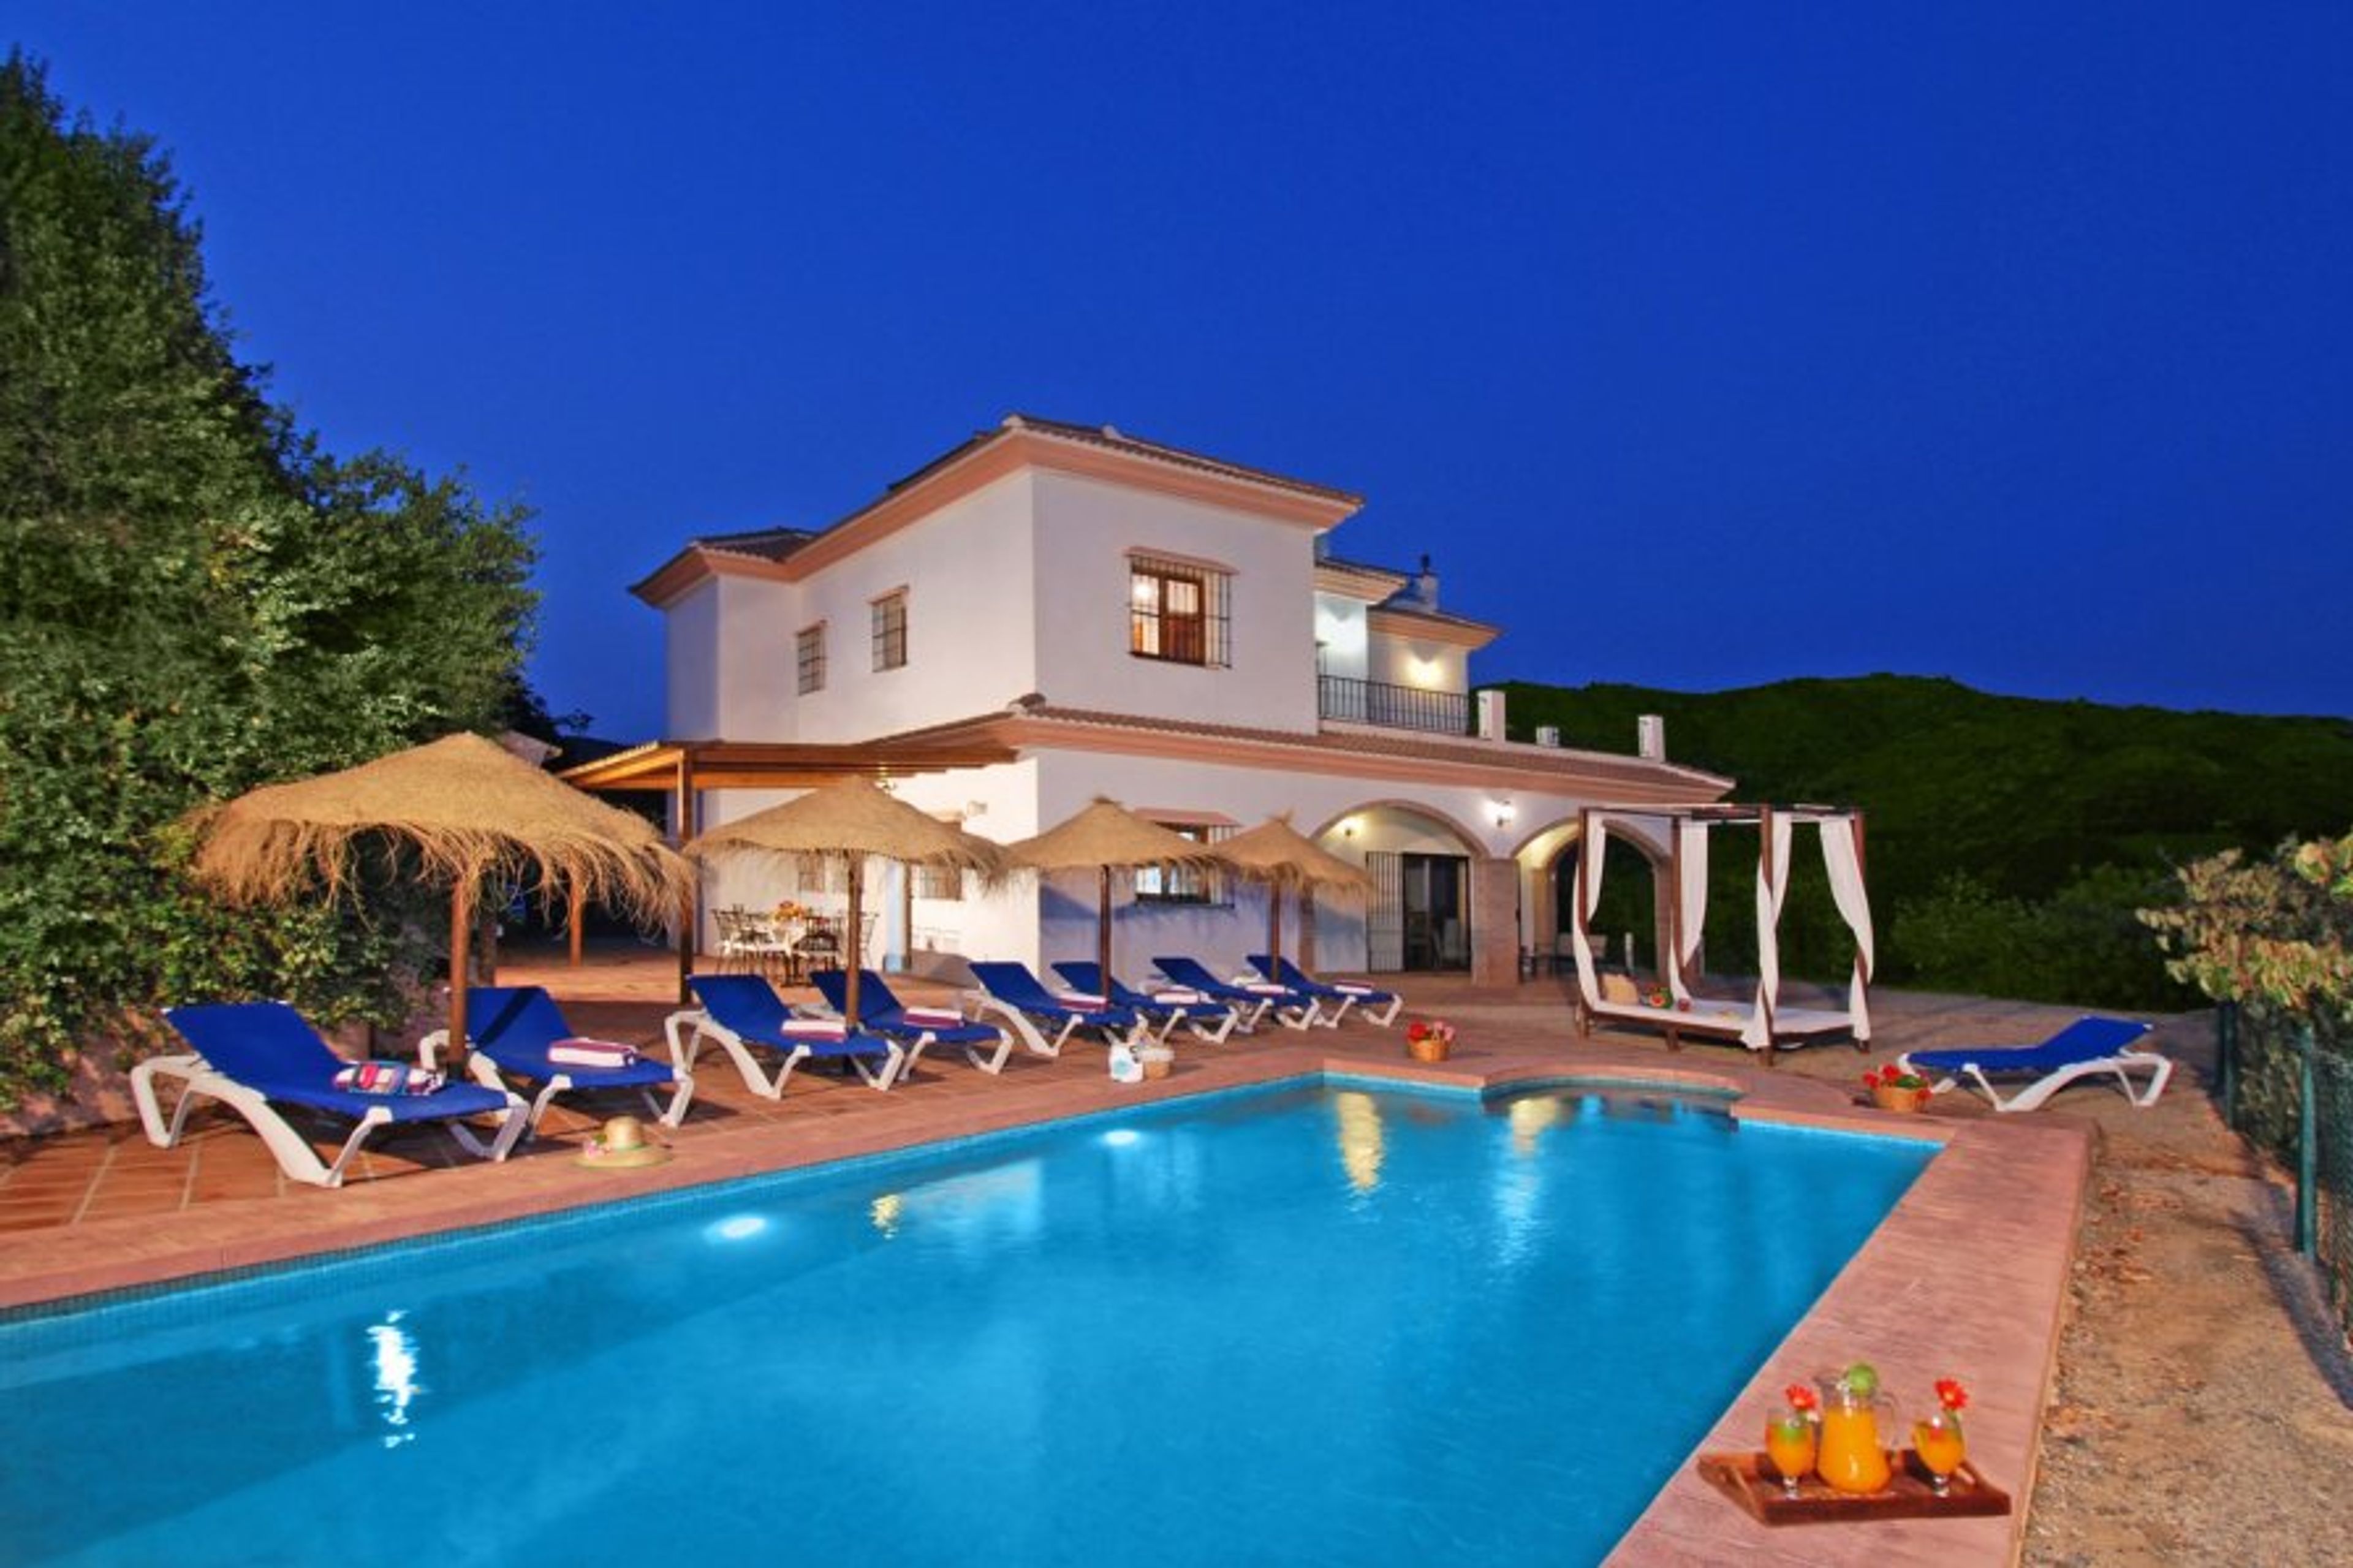 Beautiful Villa Las Palomeras!  Come and enjoy!